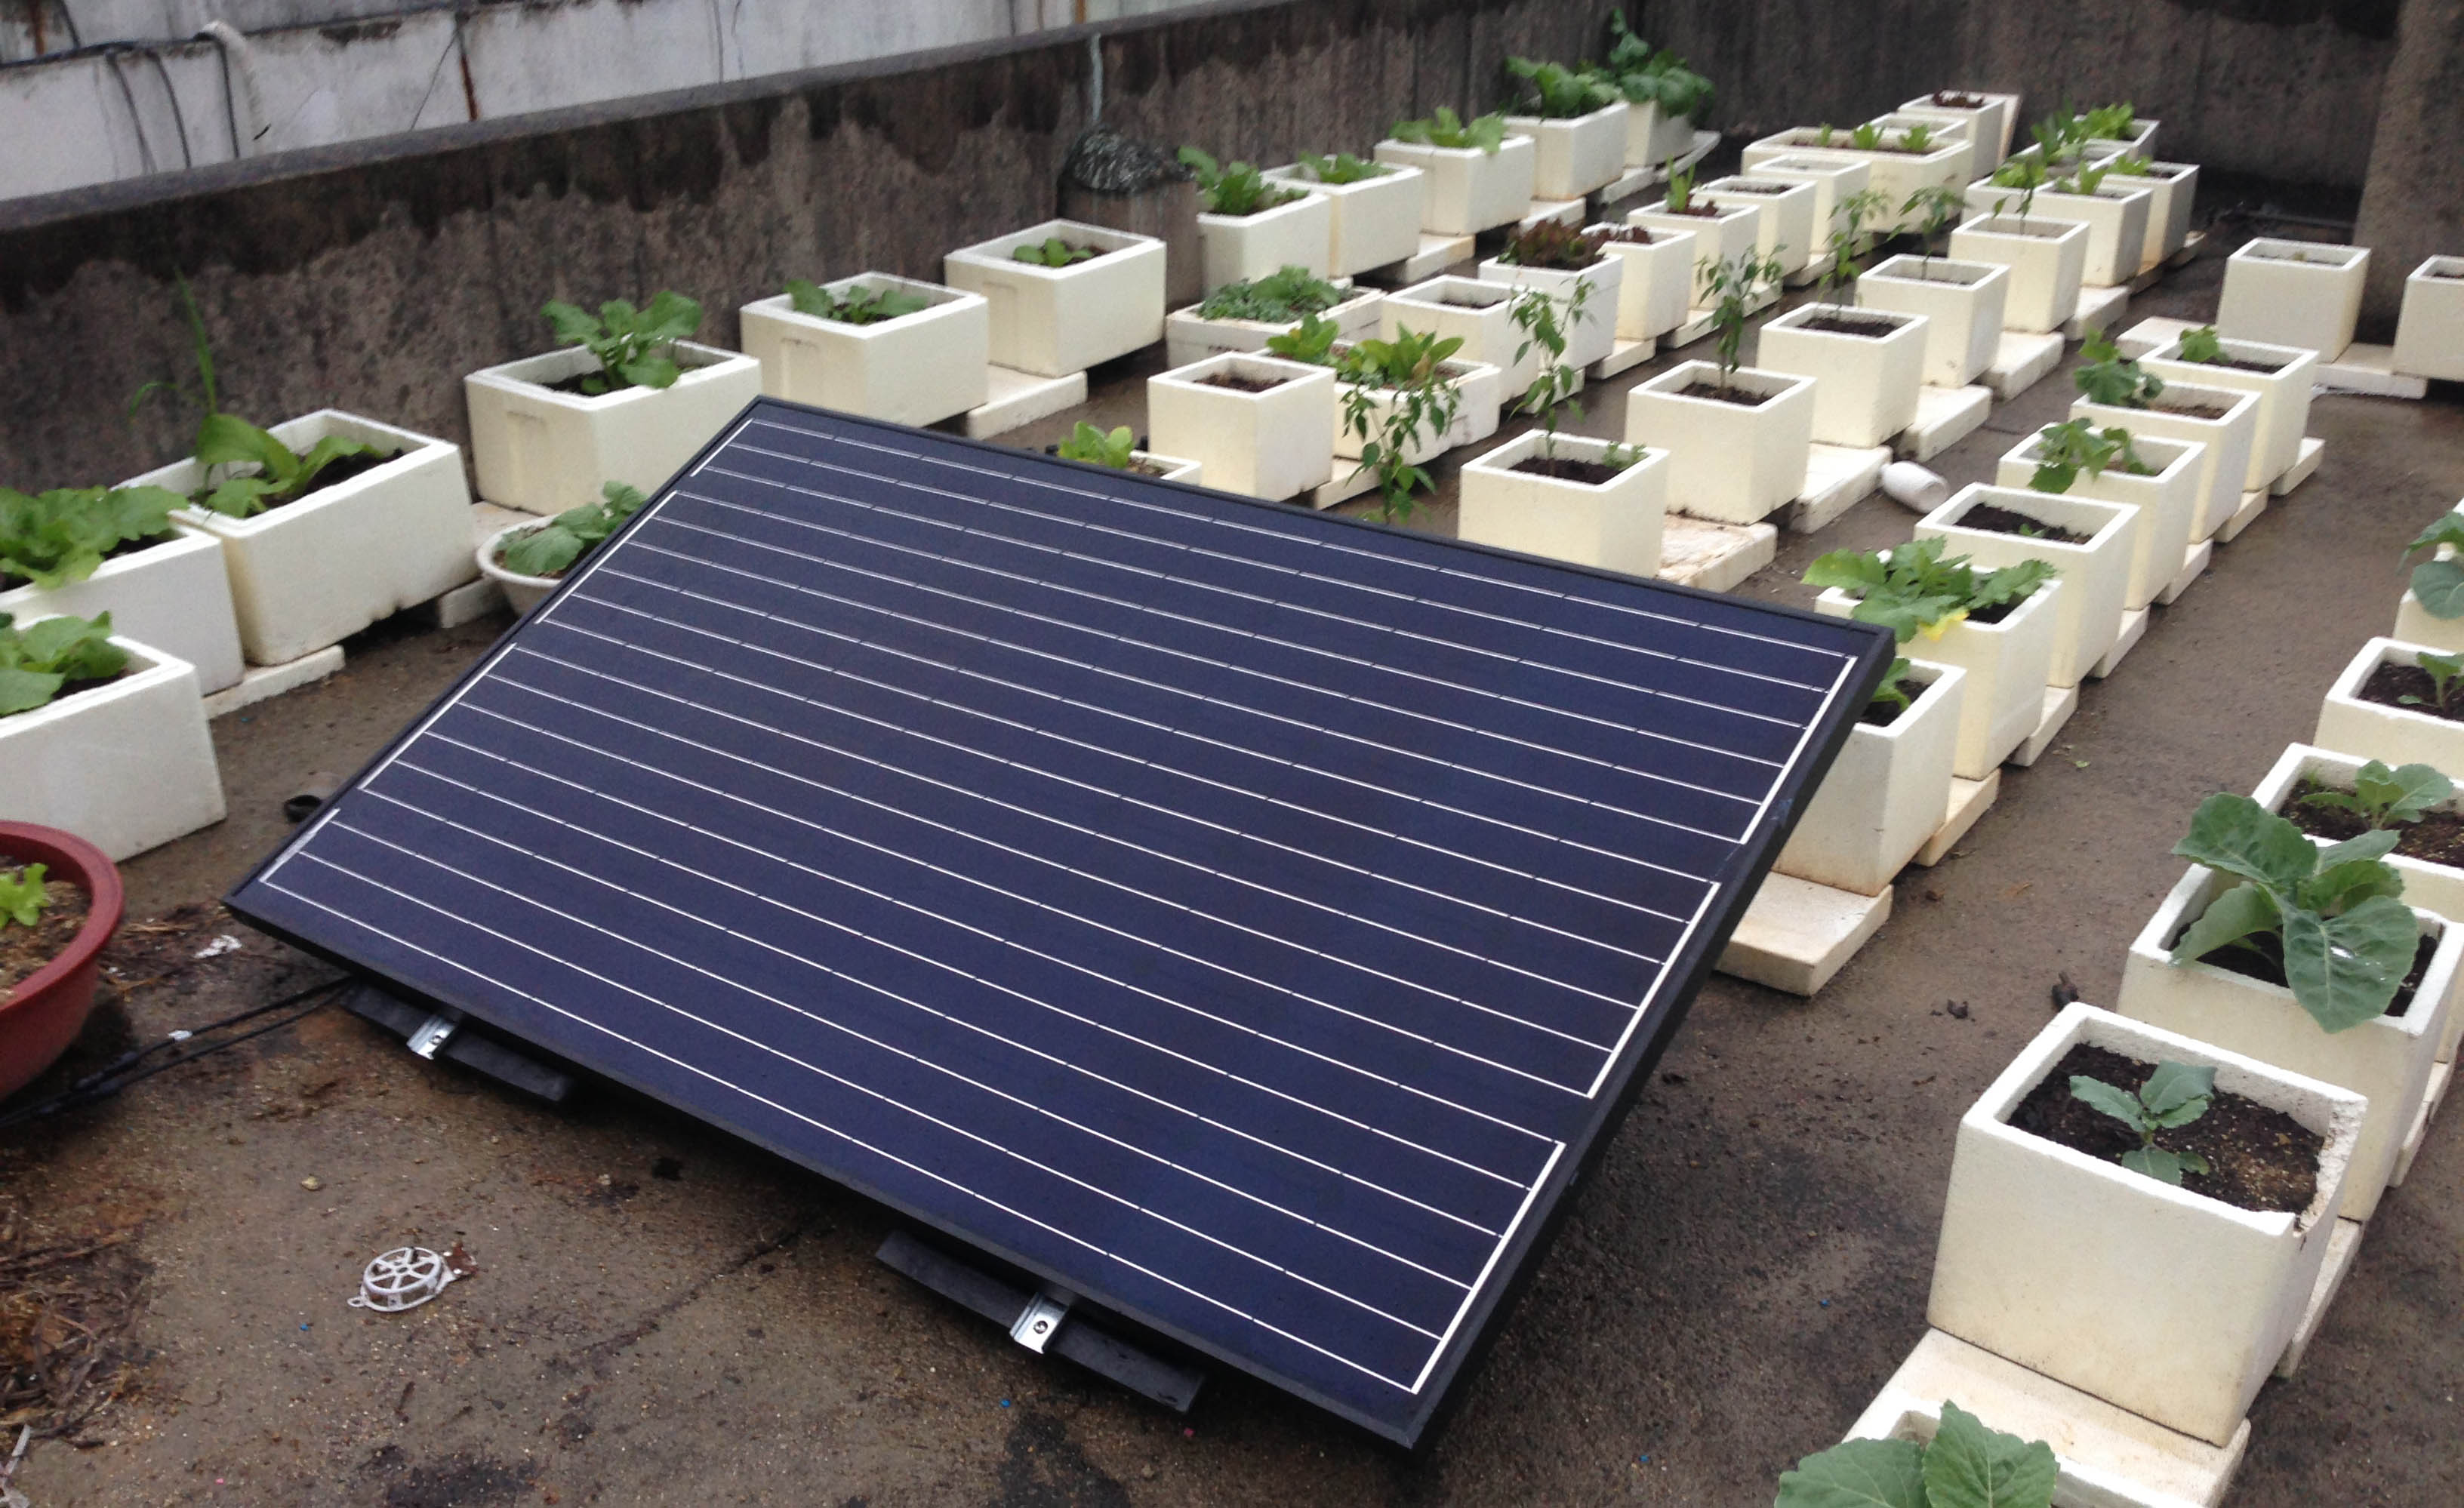 단독주택 옥상에 설치된 주택형 태양광 미니 발전소.